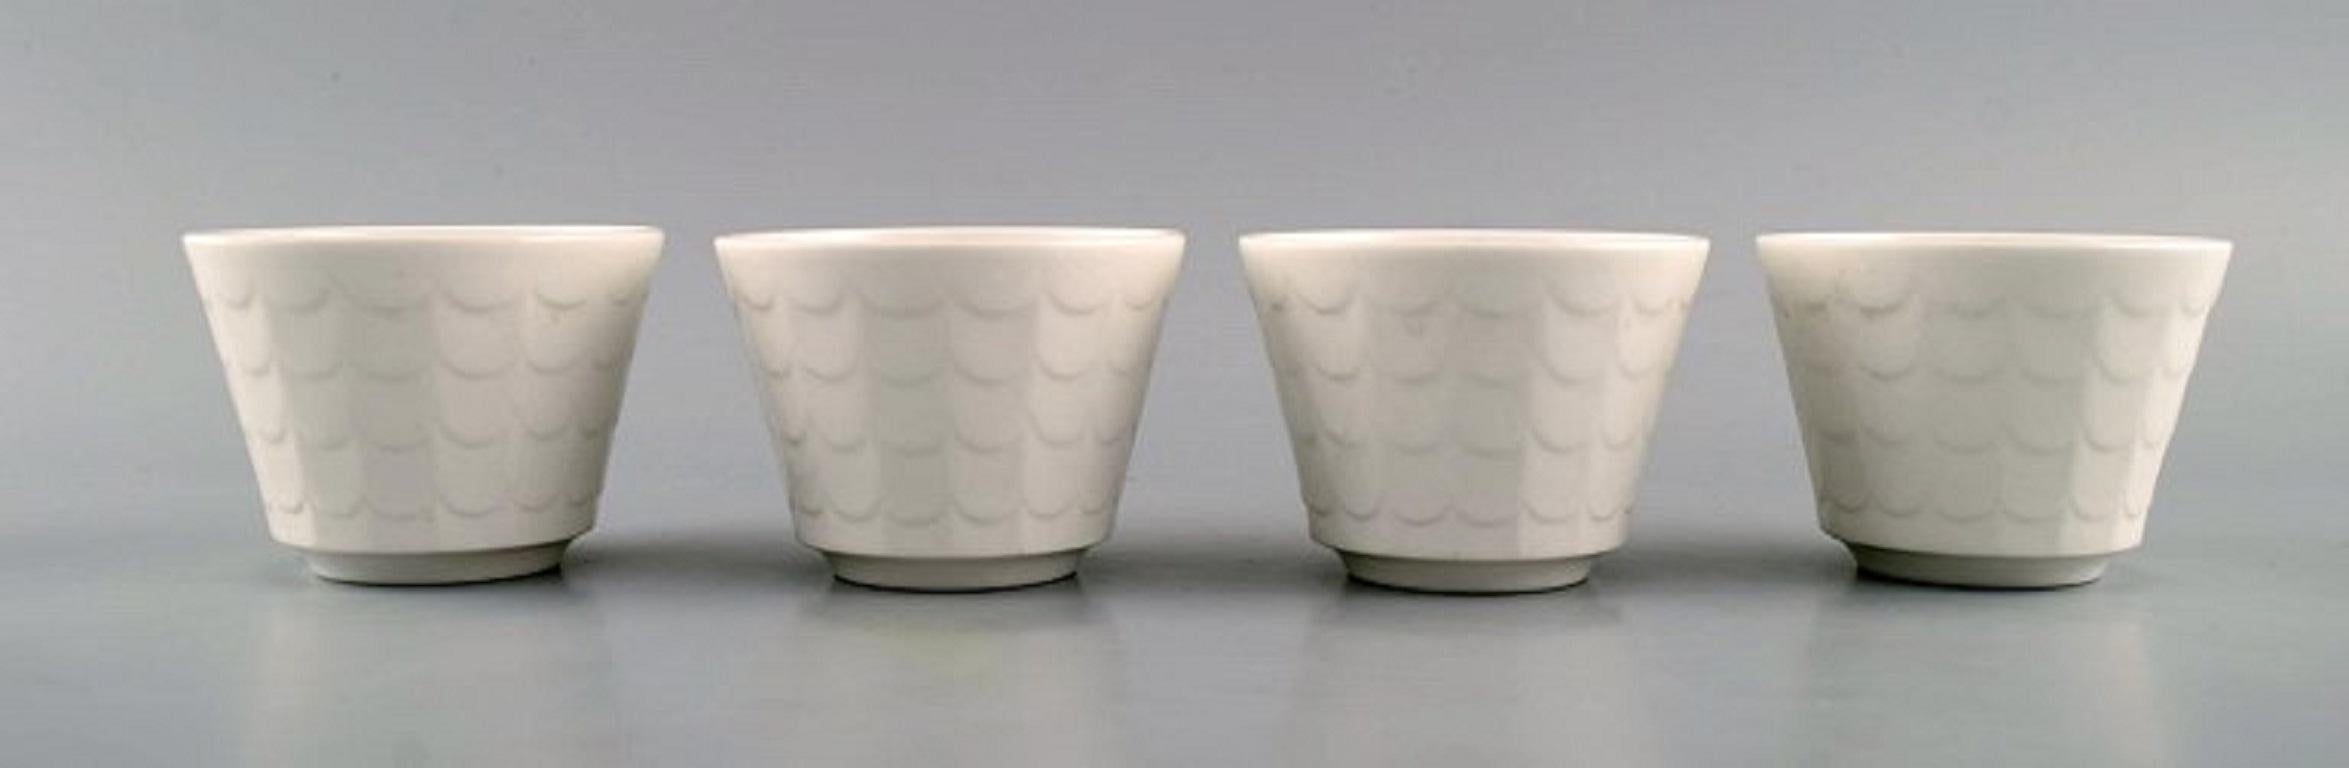 Wilhelm Kåge pour Gustavsberg. Quatre cache-pots en porcelaine. Design suédois, années 1960.
Mesures : 8.3 x 6,3 cm.
En parfait état.
Estampillé.